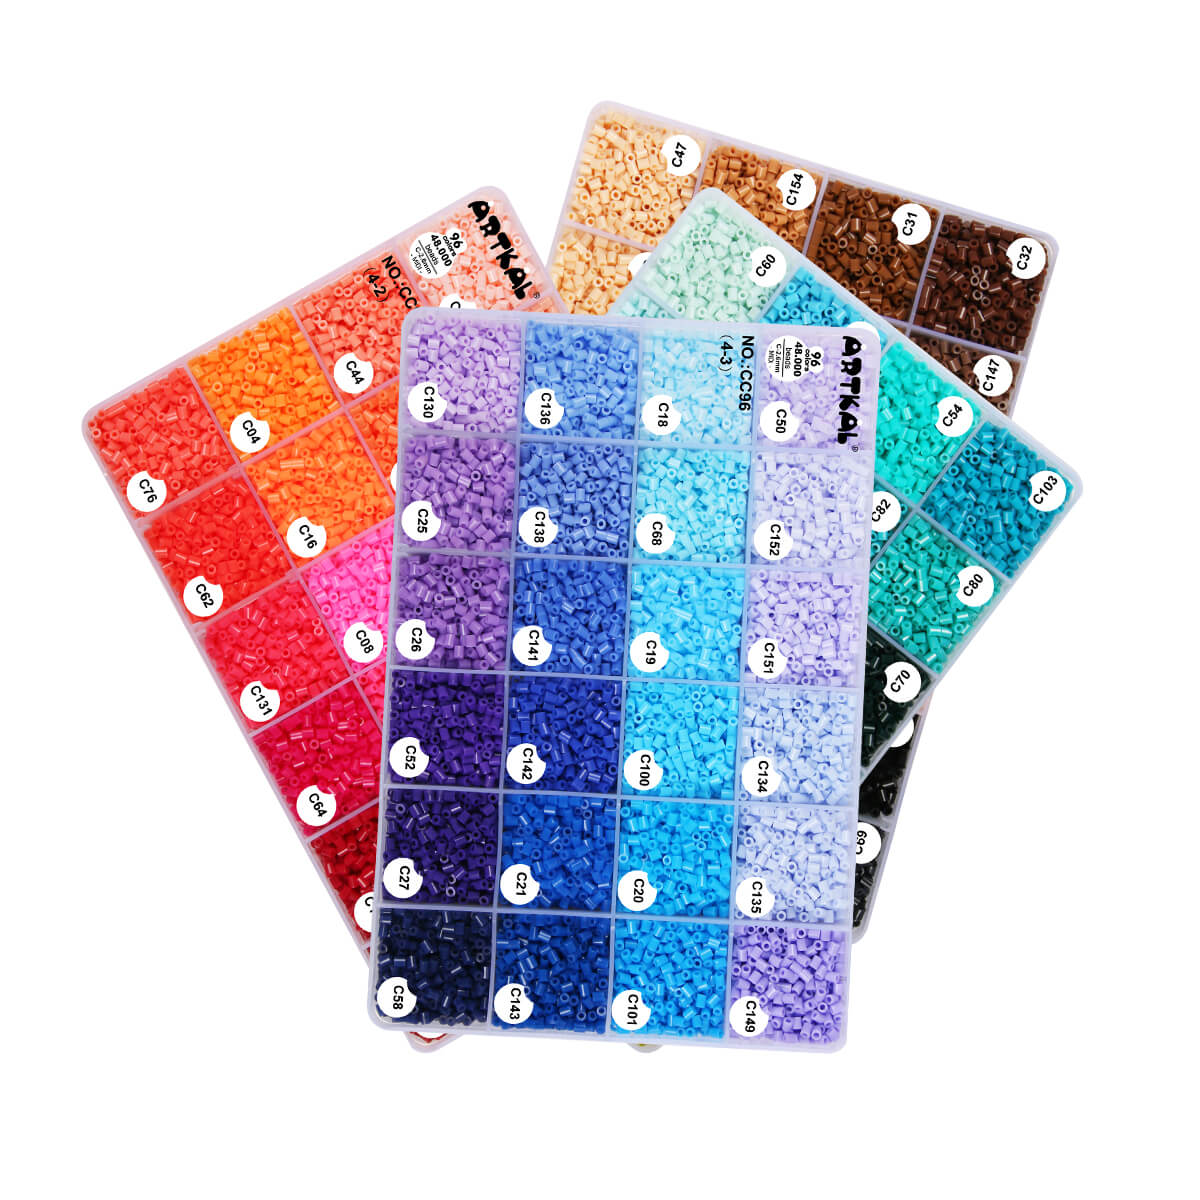 Μίνι κουτί σετ 96 χρωμάτων C-2.6mm Artkal beads CC96